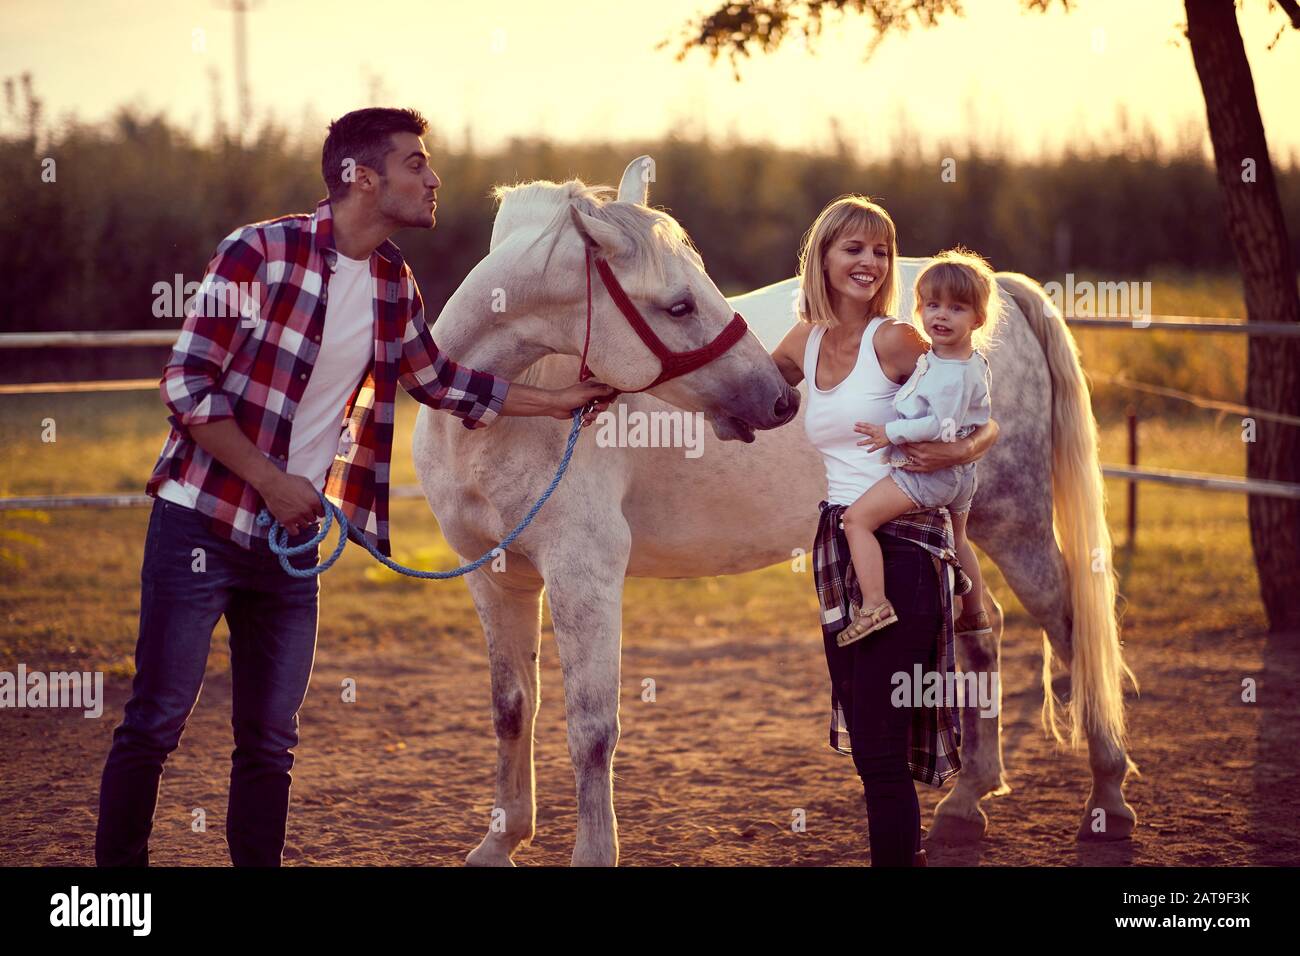 Maman et papa montrant le cheval à une petite fille, famille heureuse. Divertissement sur la campagne, coucher de soleil heure d'or. Concept de la nature de la liberté. Banque D'Images